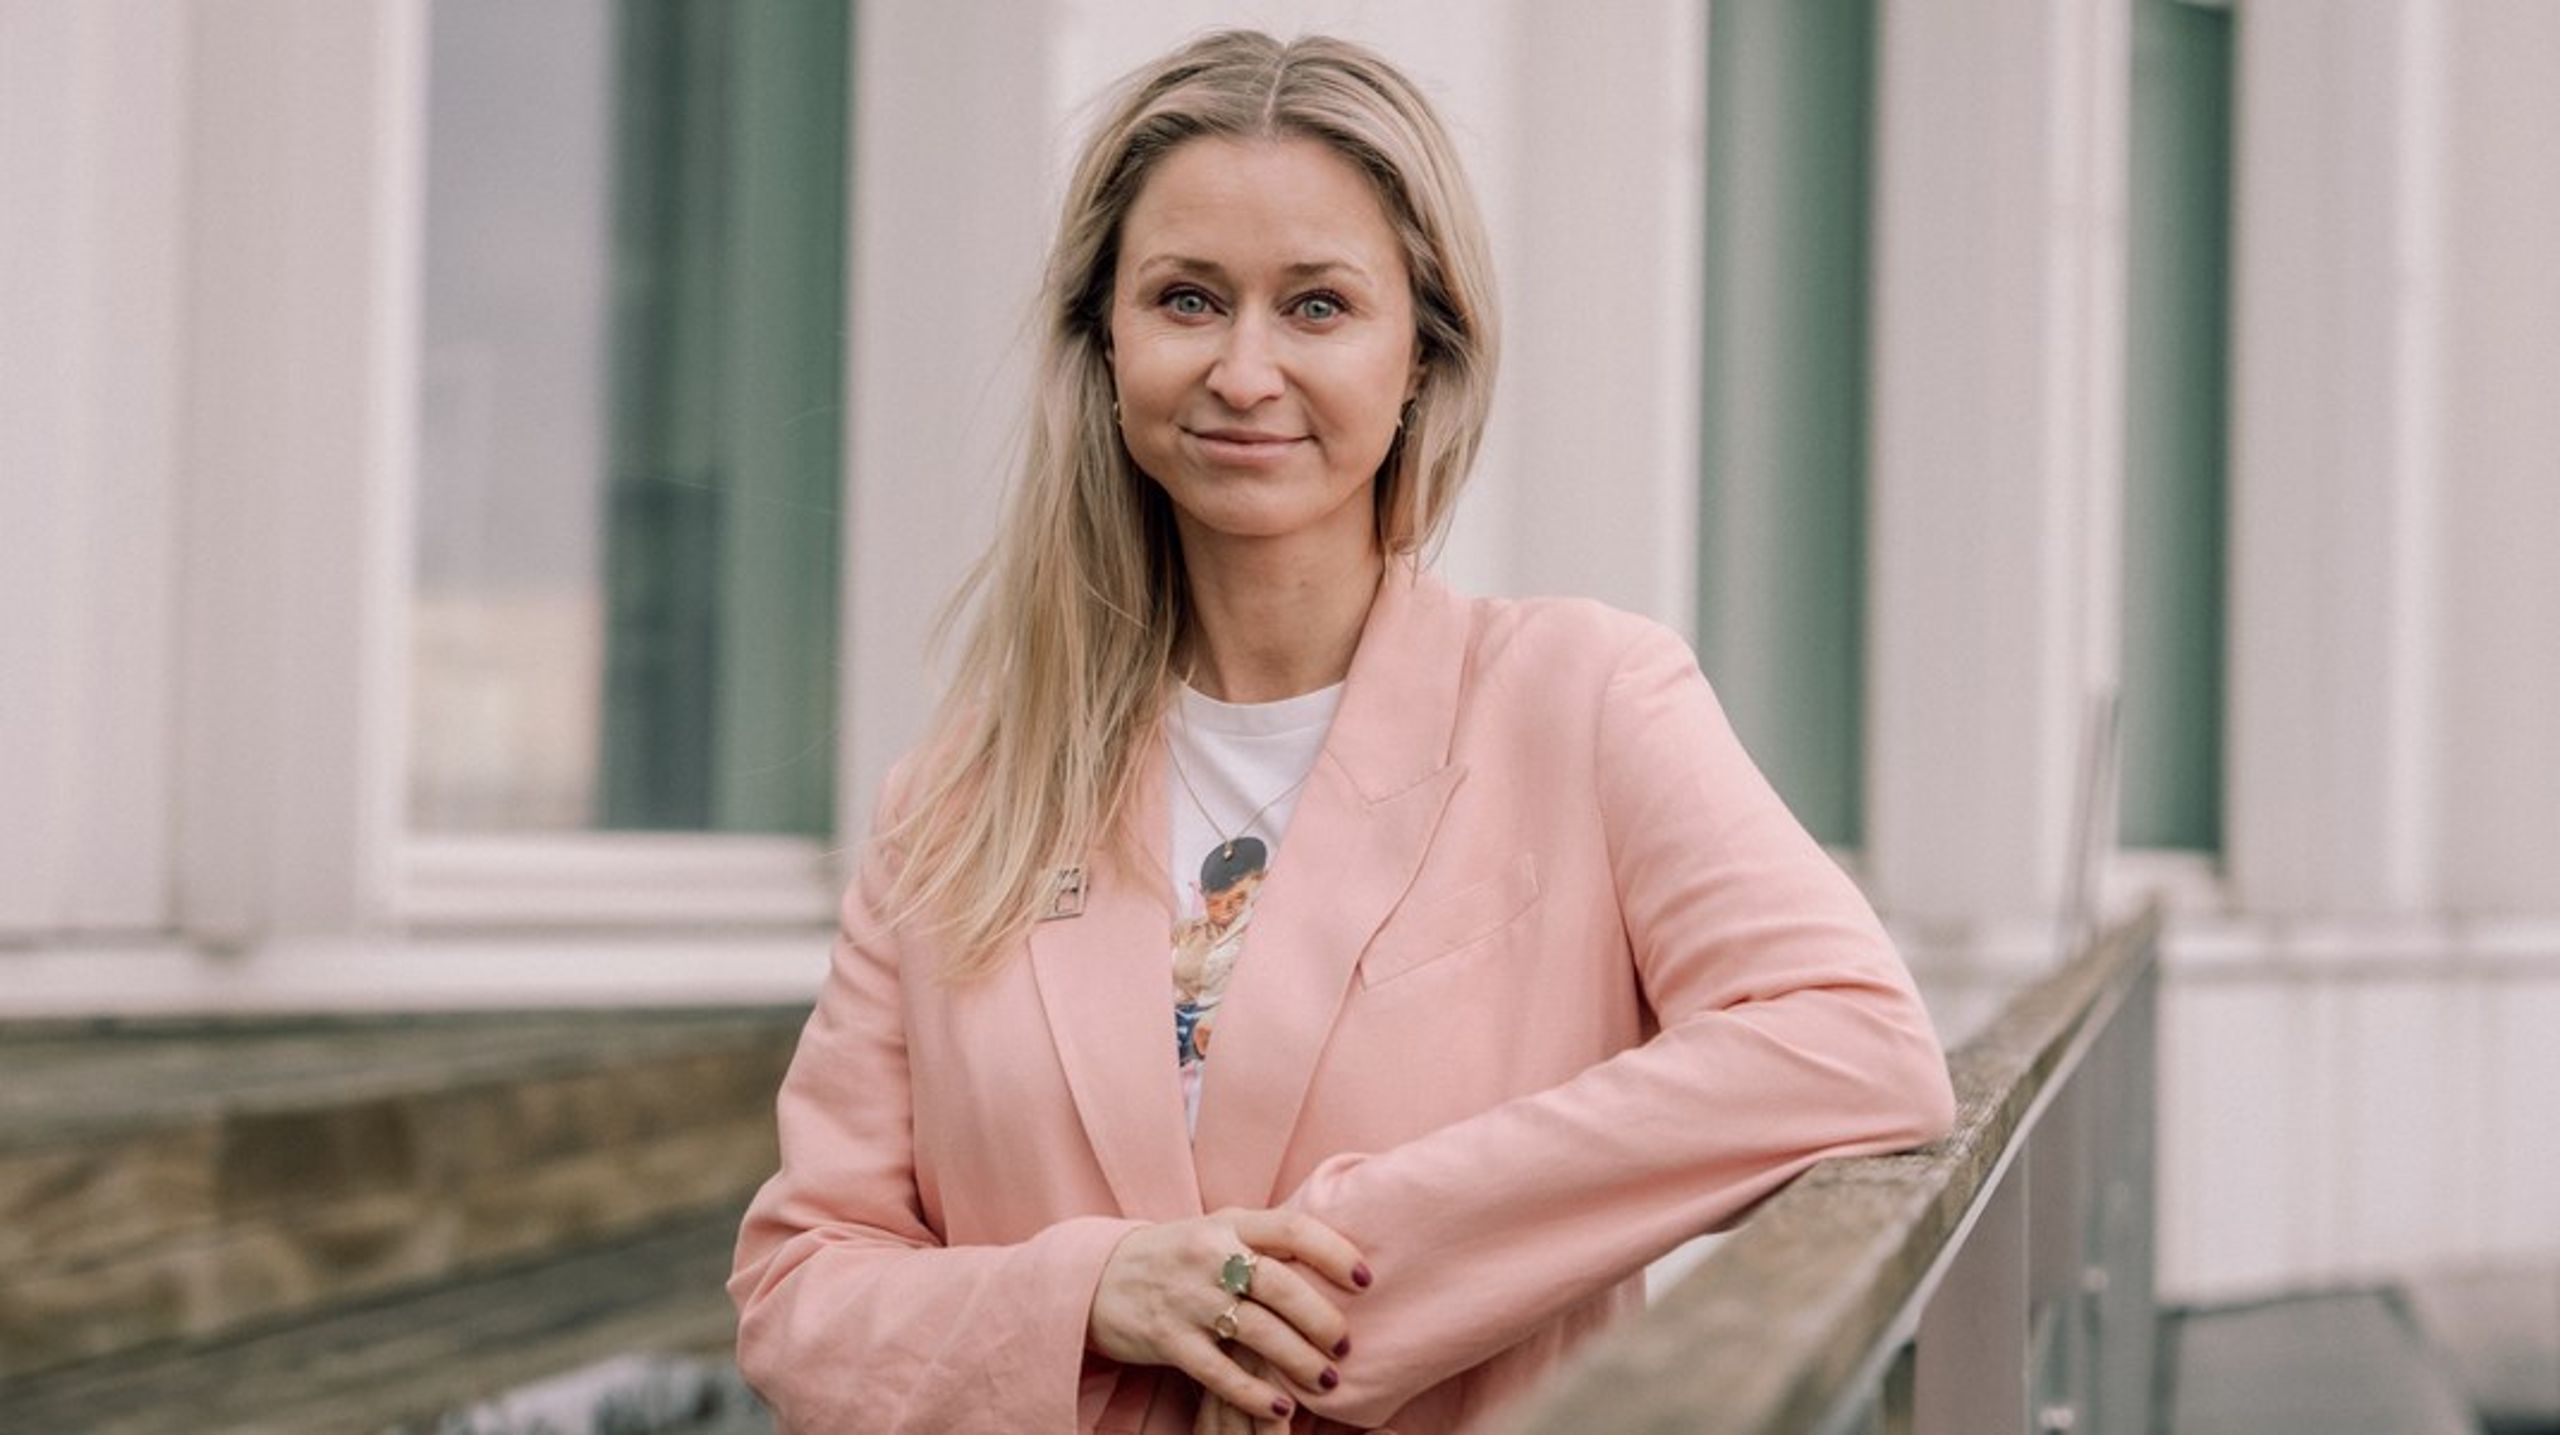 "Jeg blev hentet til Unicef Danmark af Susanne Dahl og fik mandat til at gentænke det nationale område, formulere en ny vision og styrke vidensgrundlaget i vores arbejde," skriver&nbsp;Cecilia Decara på LinkedIn.<b></b>